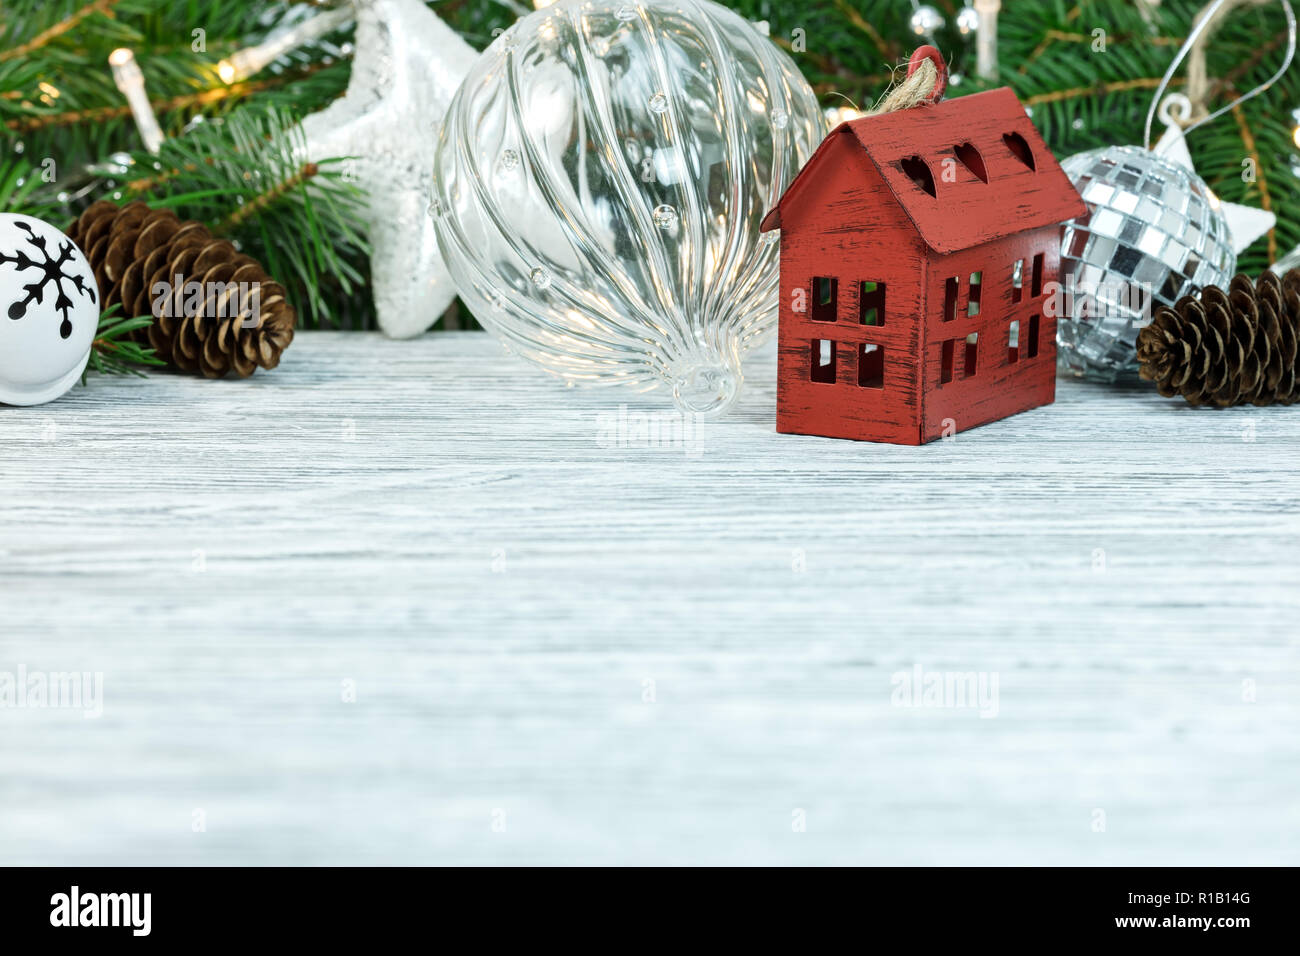 Christbaumschmuck, Bälle, dekorative rote kleines Haus und Grüne Tanne Baum auf weißem Schreibtisch aus Holz Stockfoto